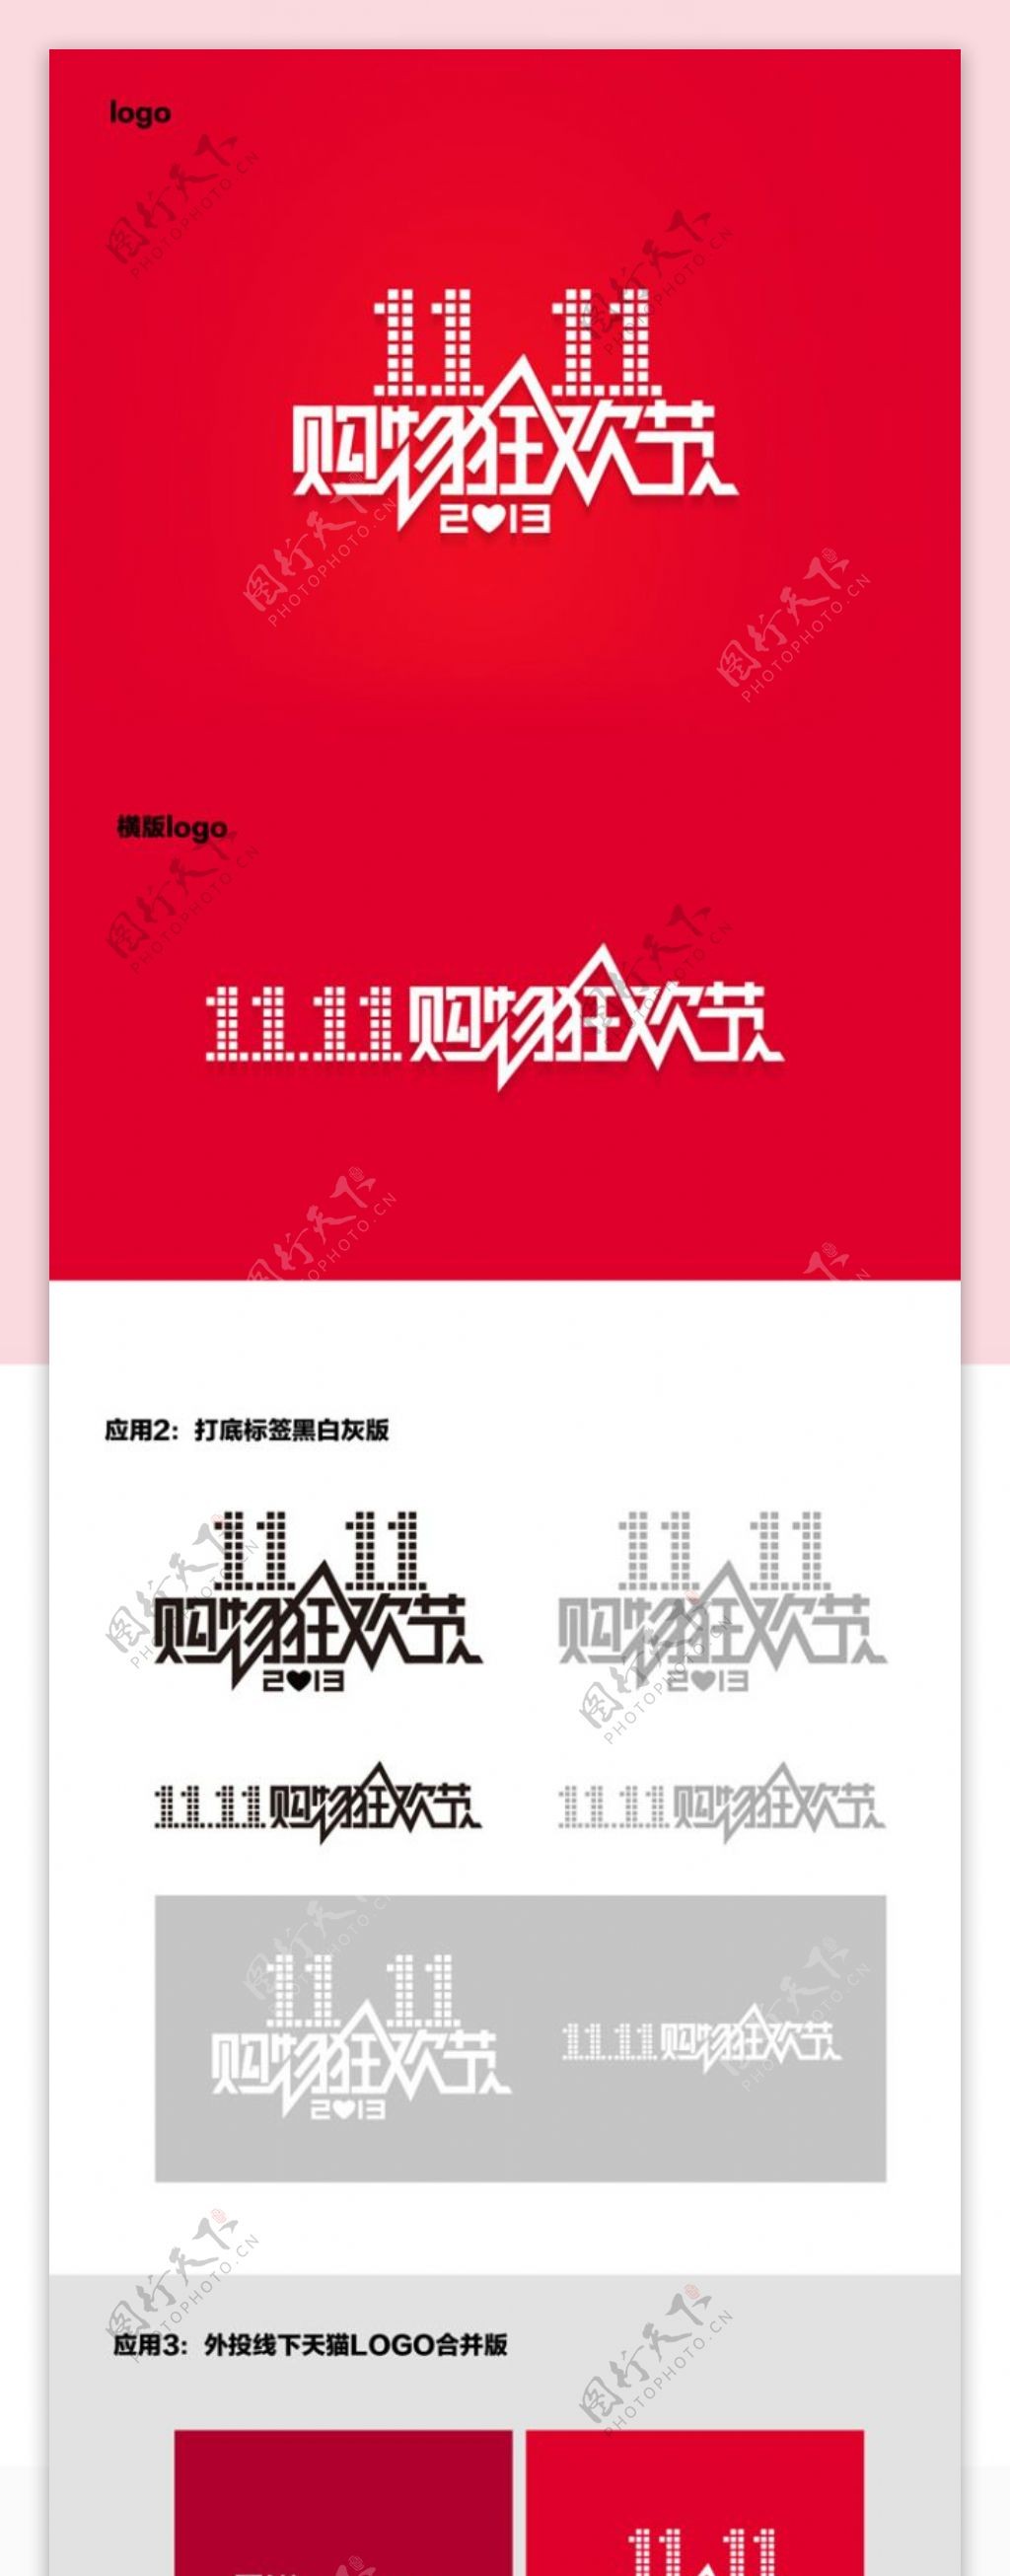 2013双十一购物狂欢节logo